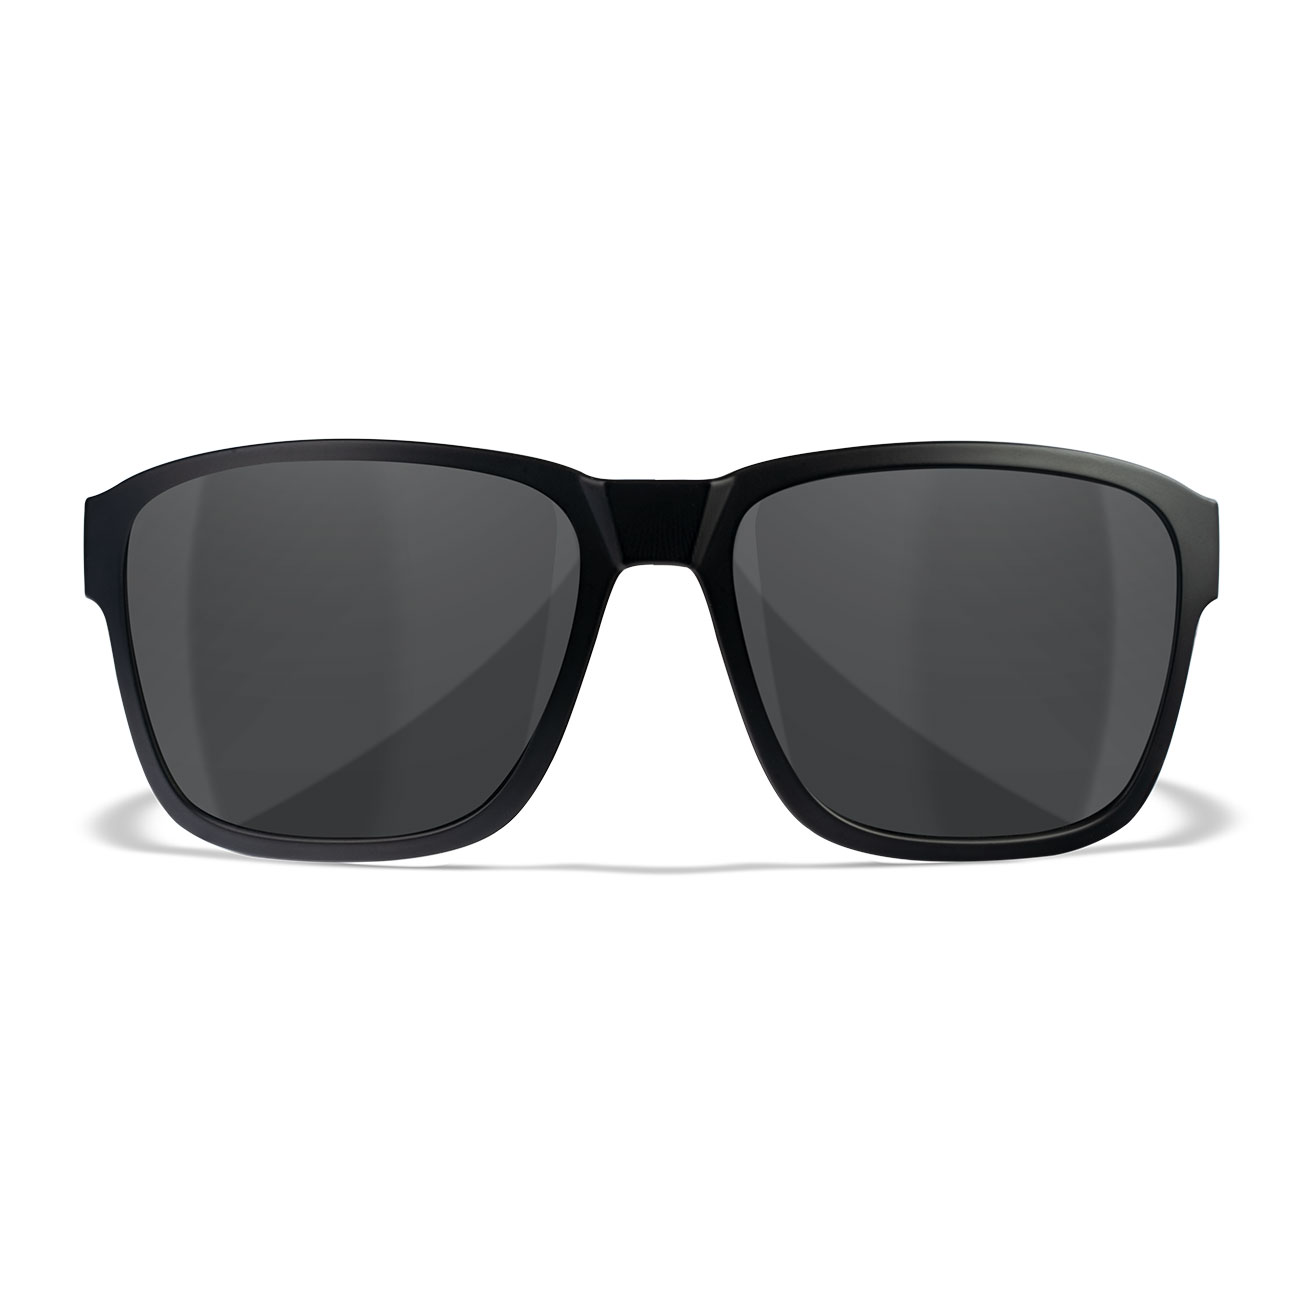 Wiley X Sonnenbrille Trek matt schwarz Glser grau inkl. Brillenetui und Seitenschutz Bild 1